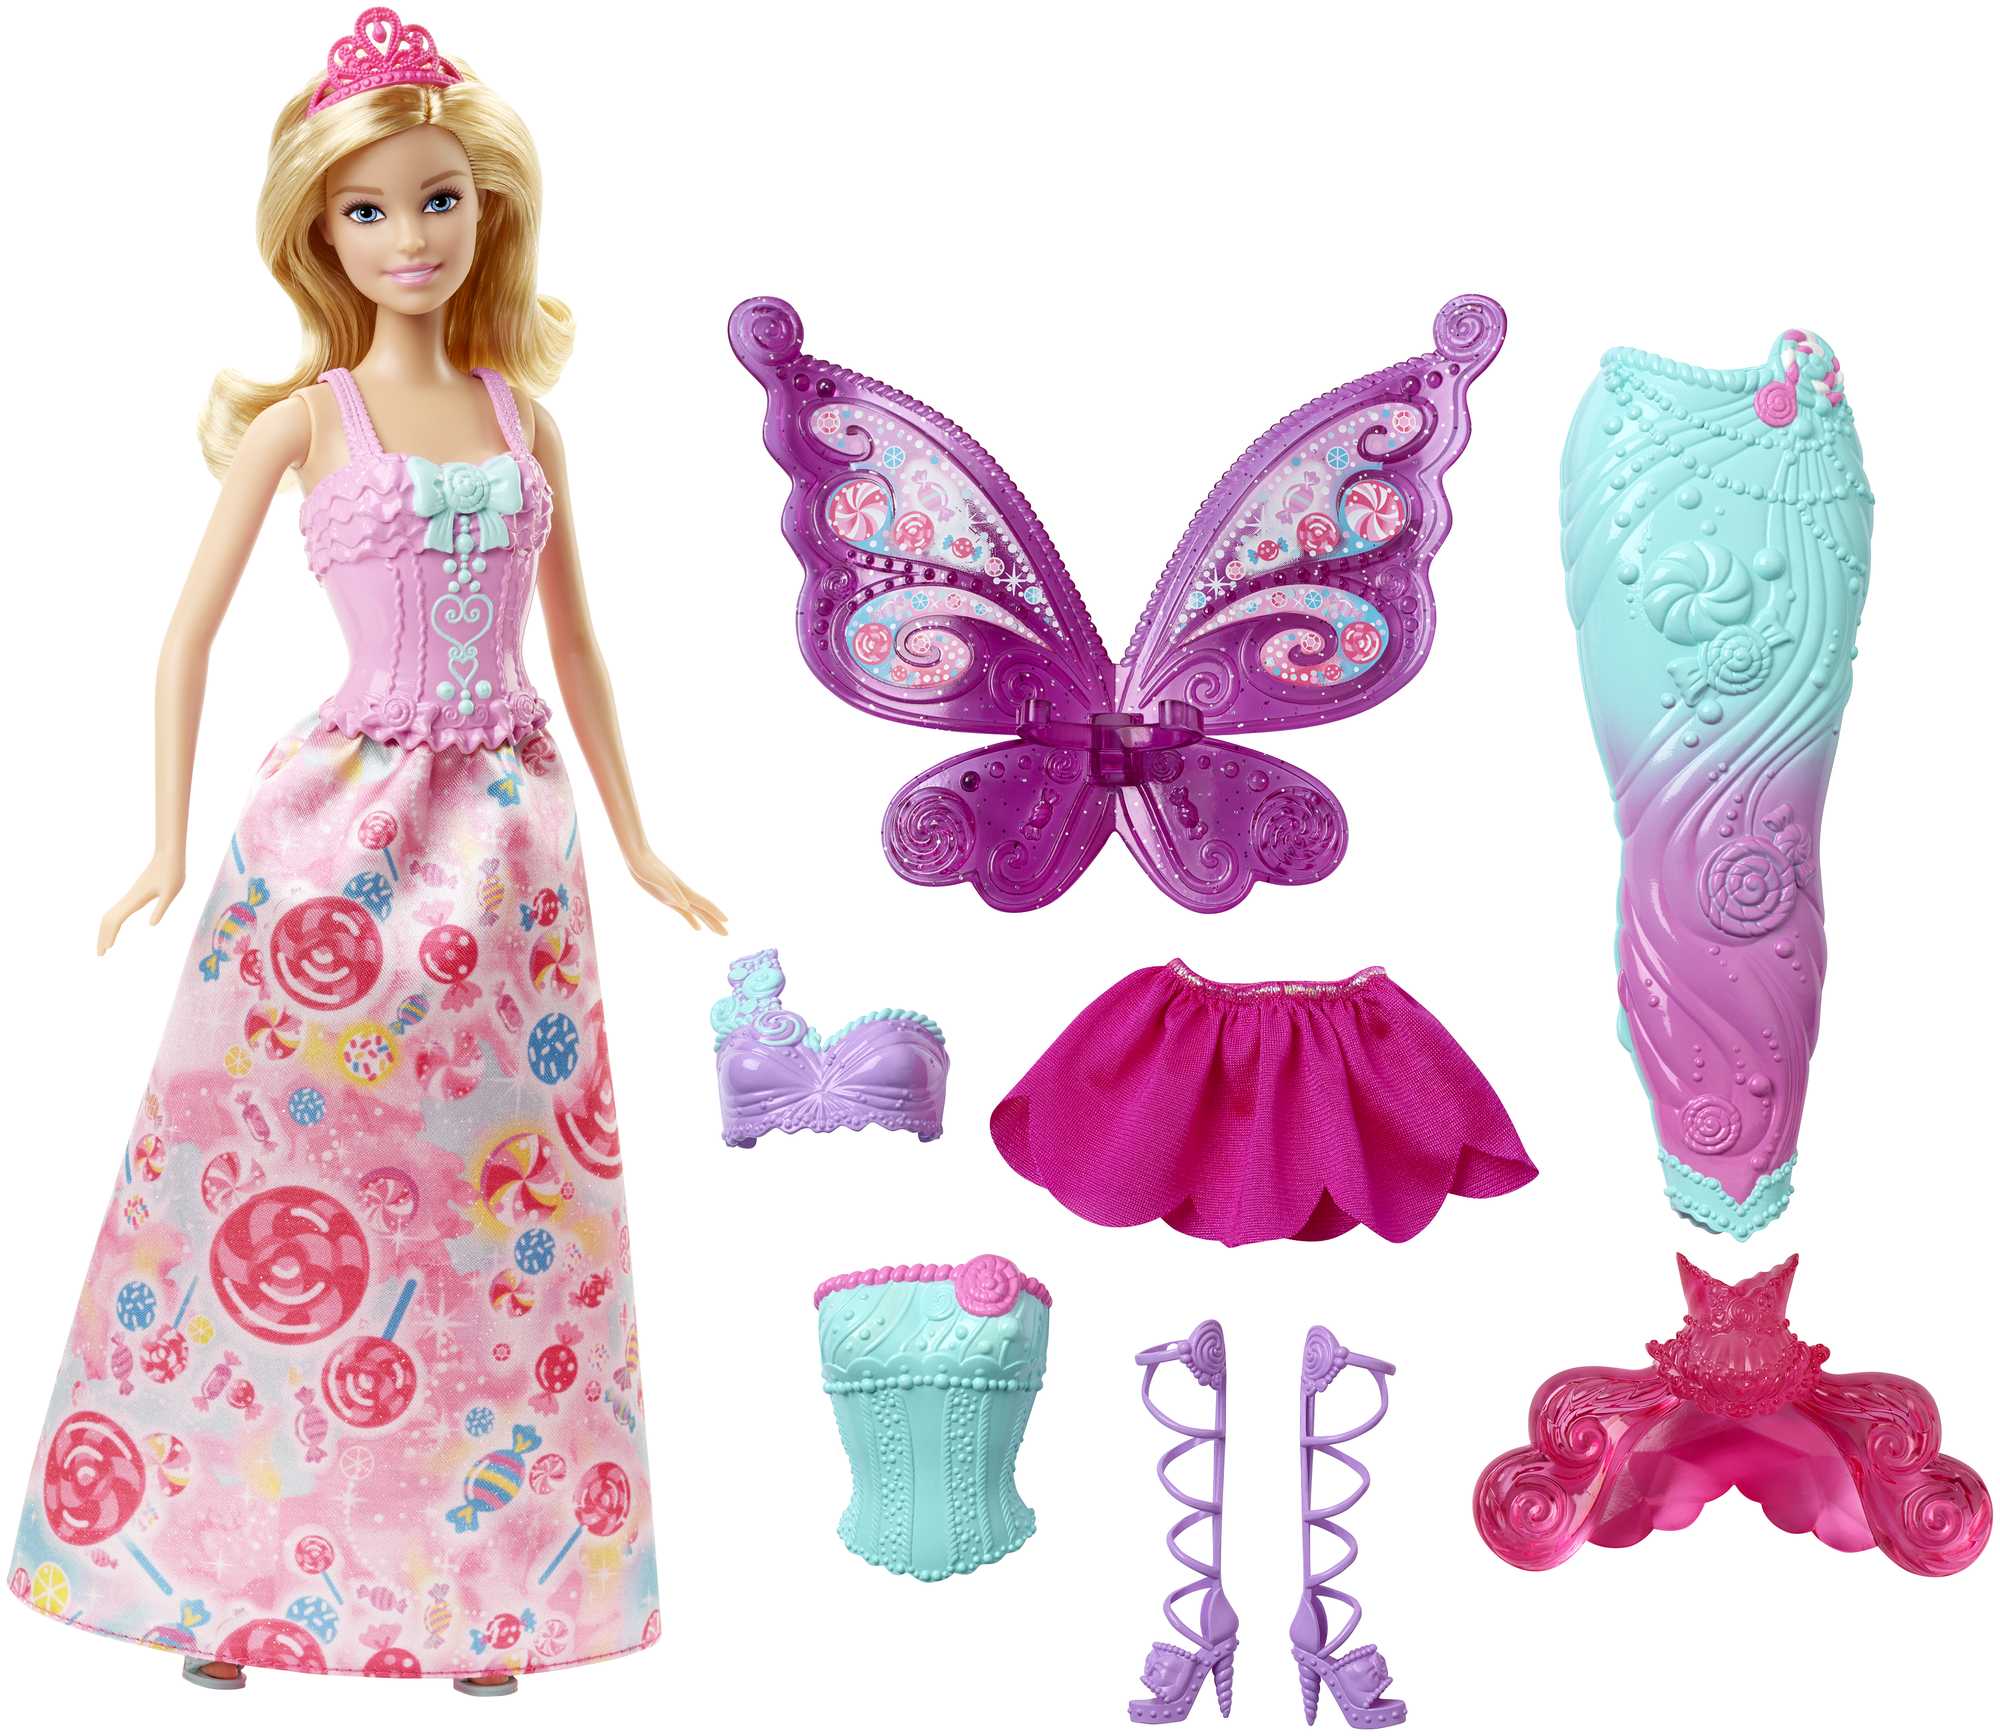 Barbie docka med 3 fantasi kläder och tillbehör, inklusive sjöjungfru svans & fairy vingar